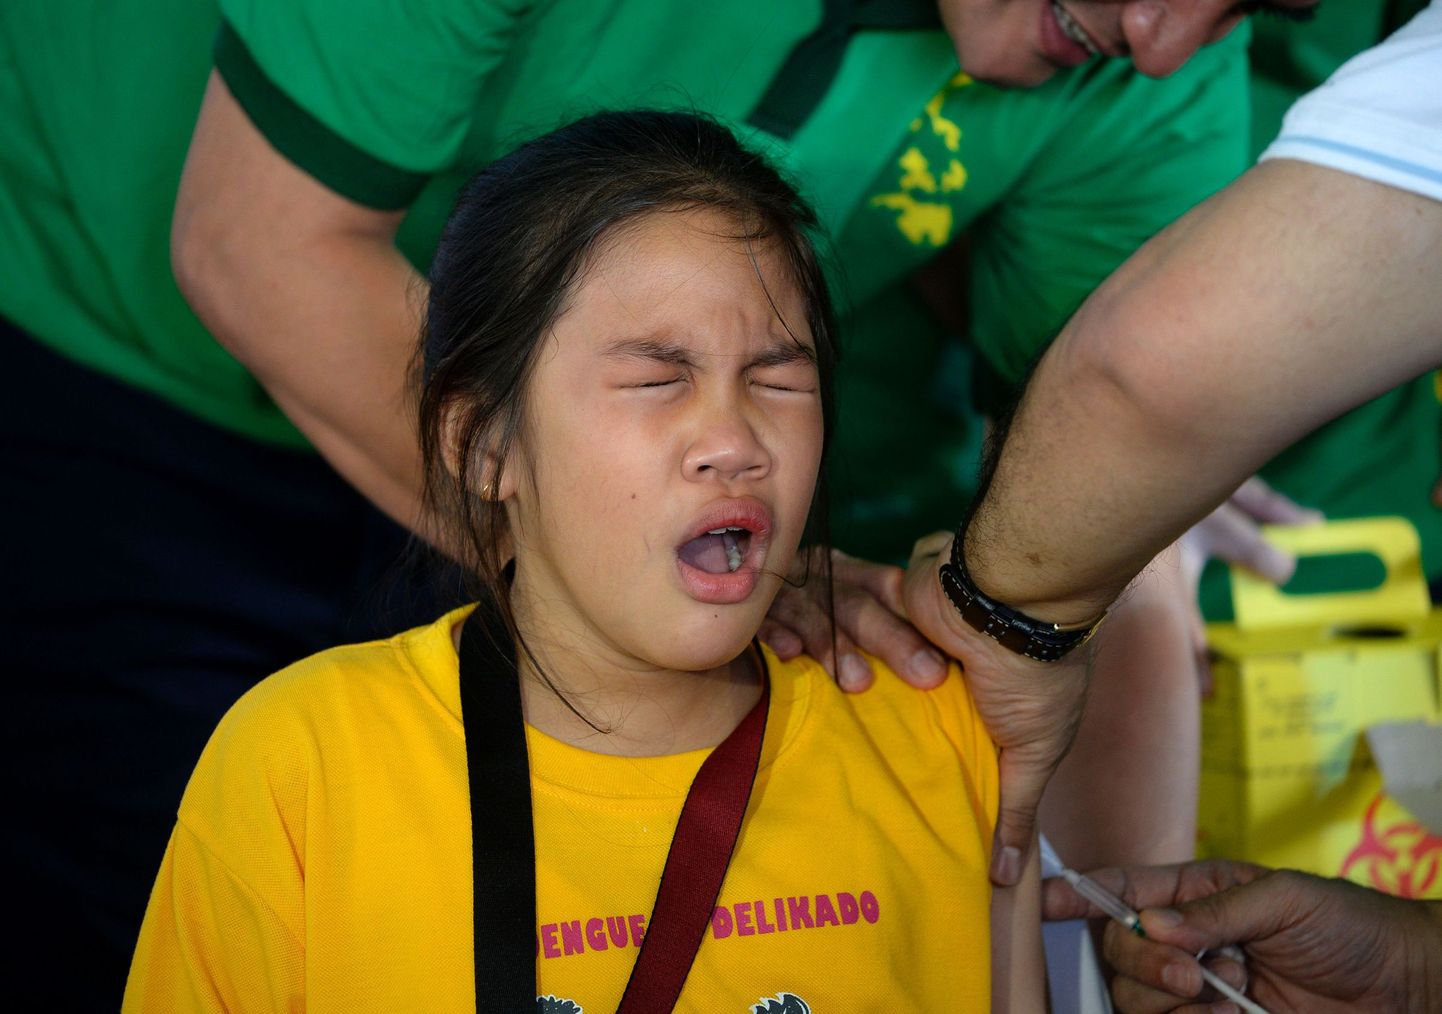 Tüdruk Filipiinide pealinnas Manilas saamas dengue viiruse vastast vaktsiini.